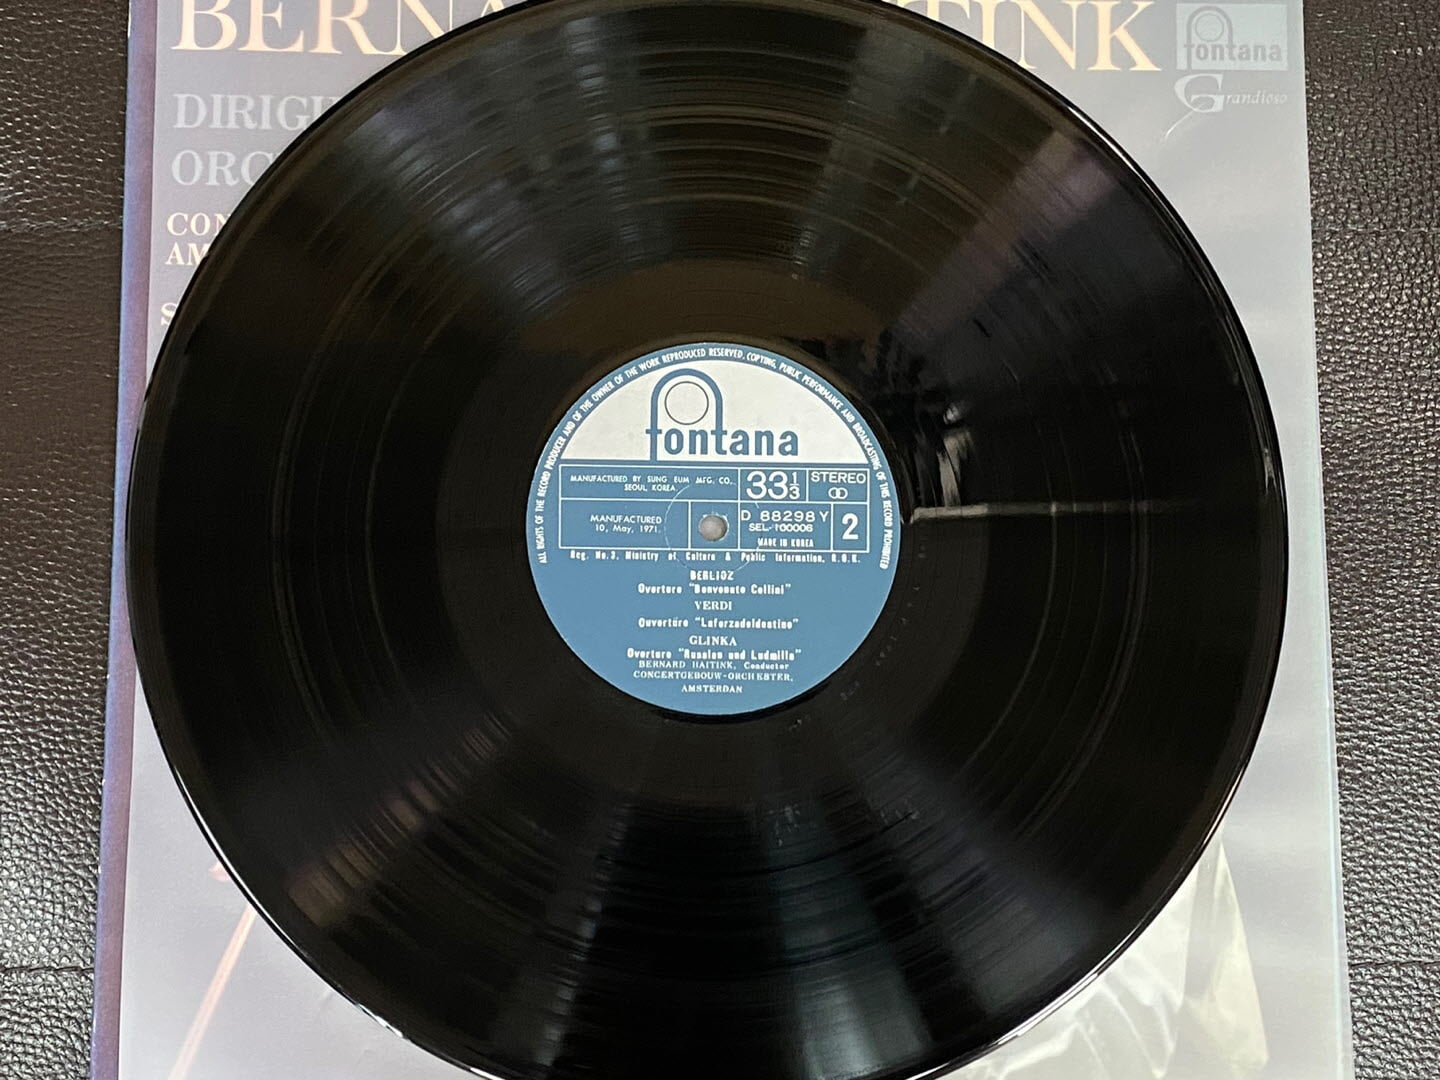 [LP] 베르나르트 하이팅크 - Bernard Haitink - Dirigiert Beruhmte Orchesterwerke Der Romantik LP [성음-라이센스반]